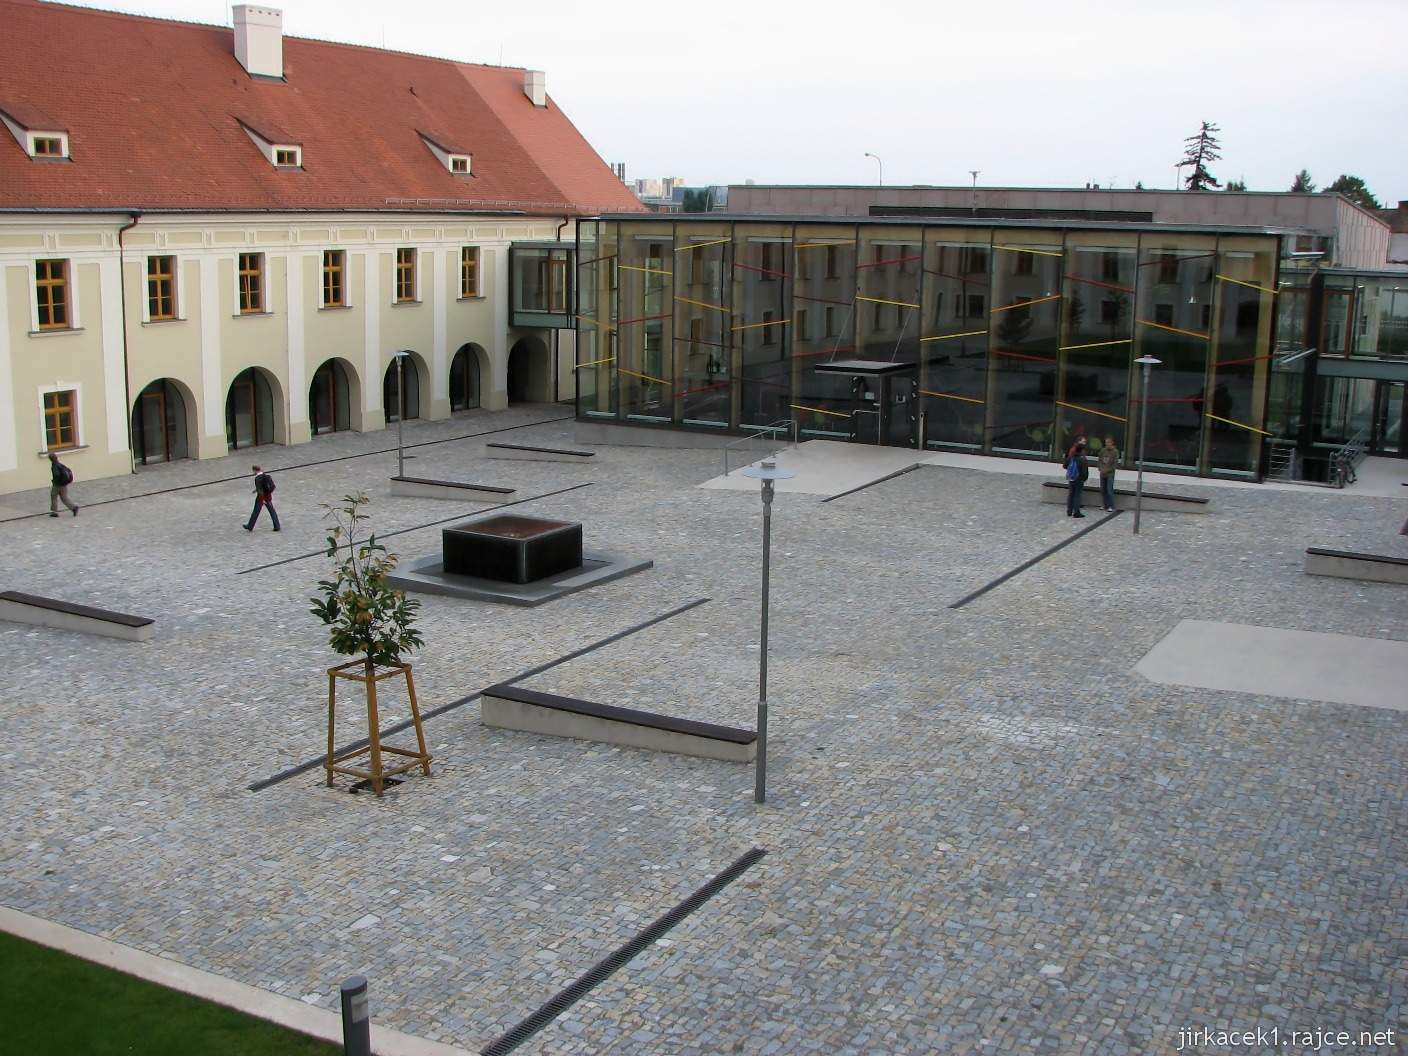  Brno Královo Pole - klášter kartuziánů - nádvoří